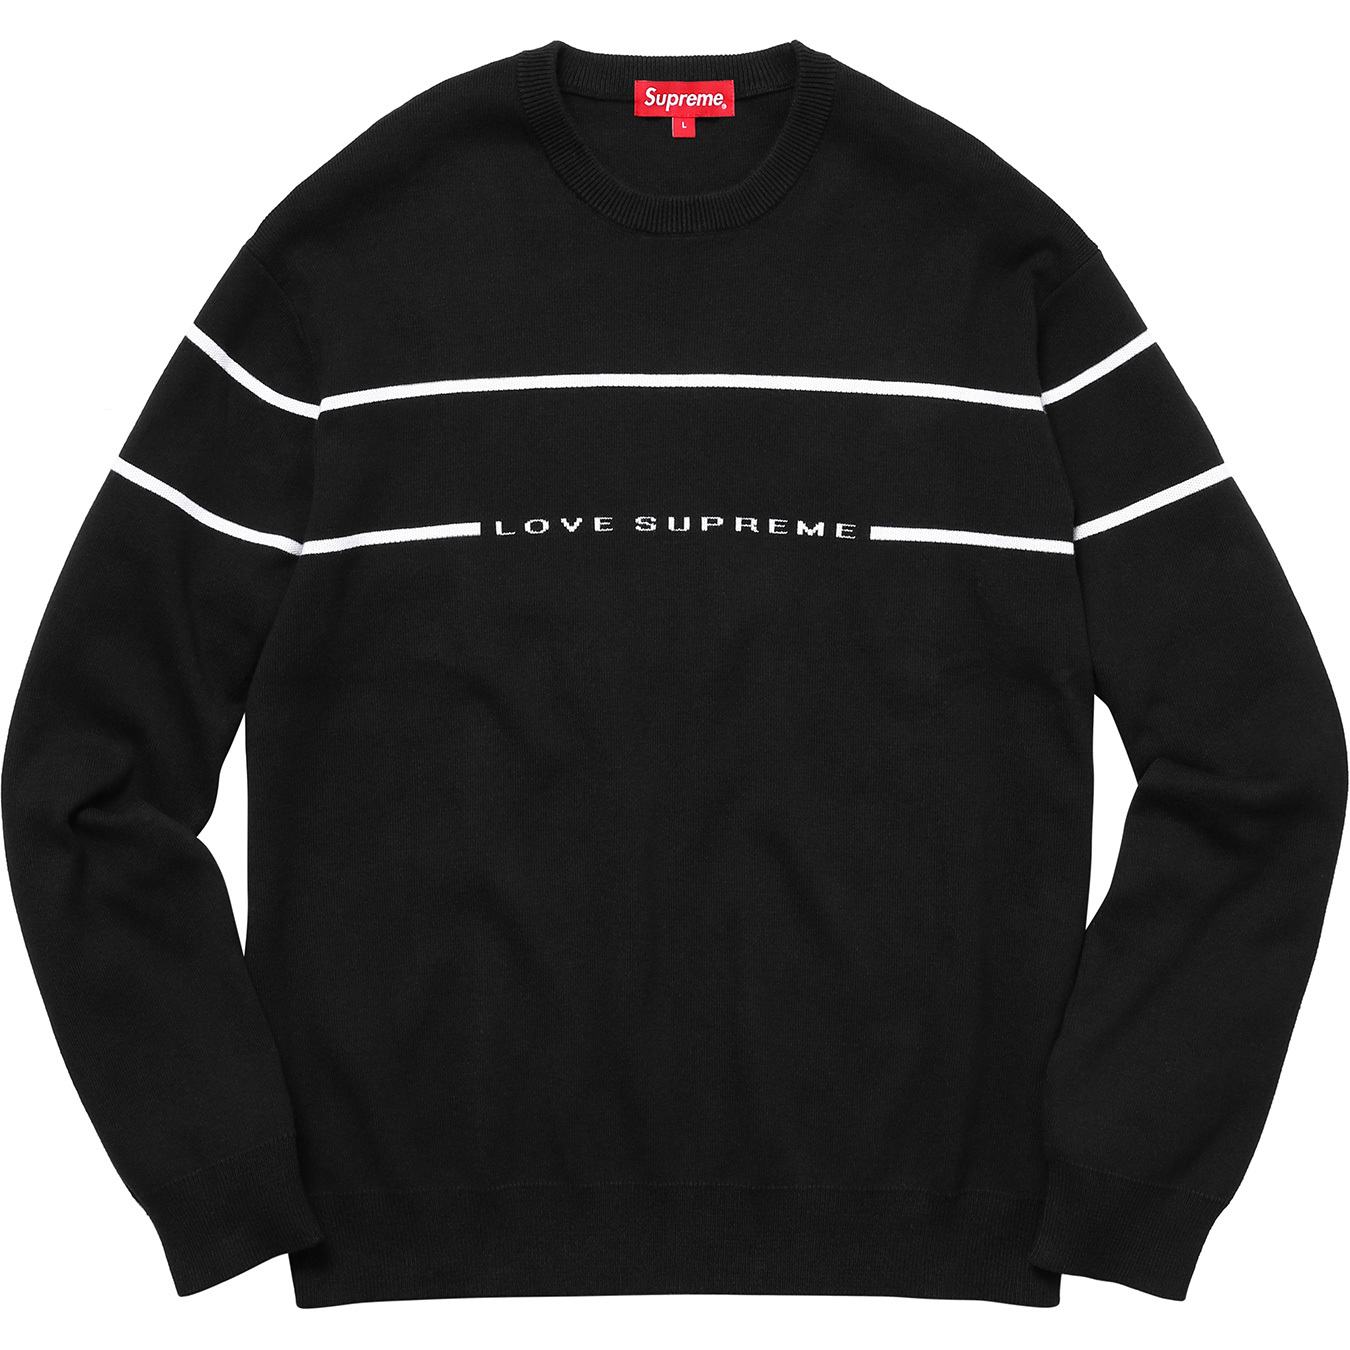 Supreme Love Supreme Sweater Black - FW17